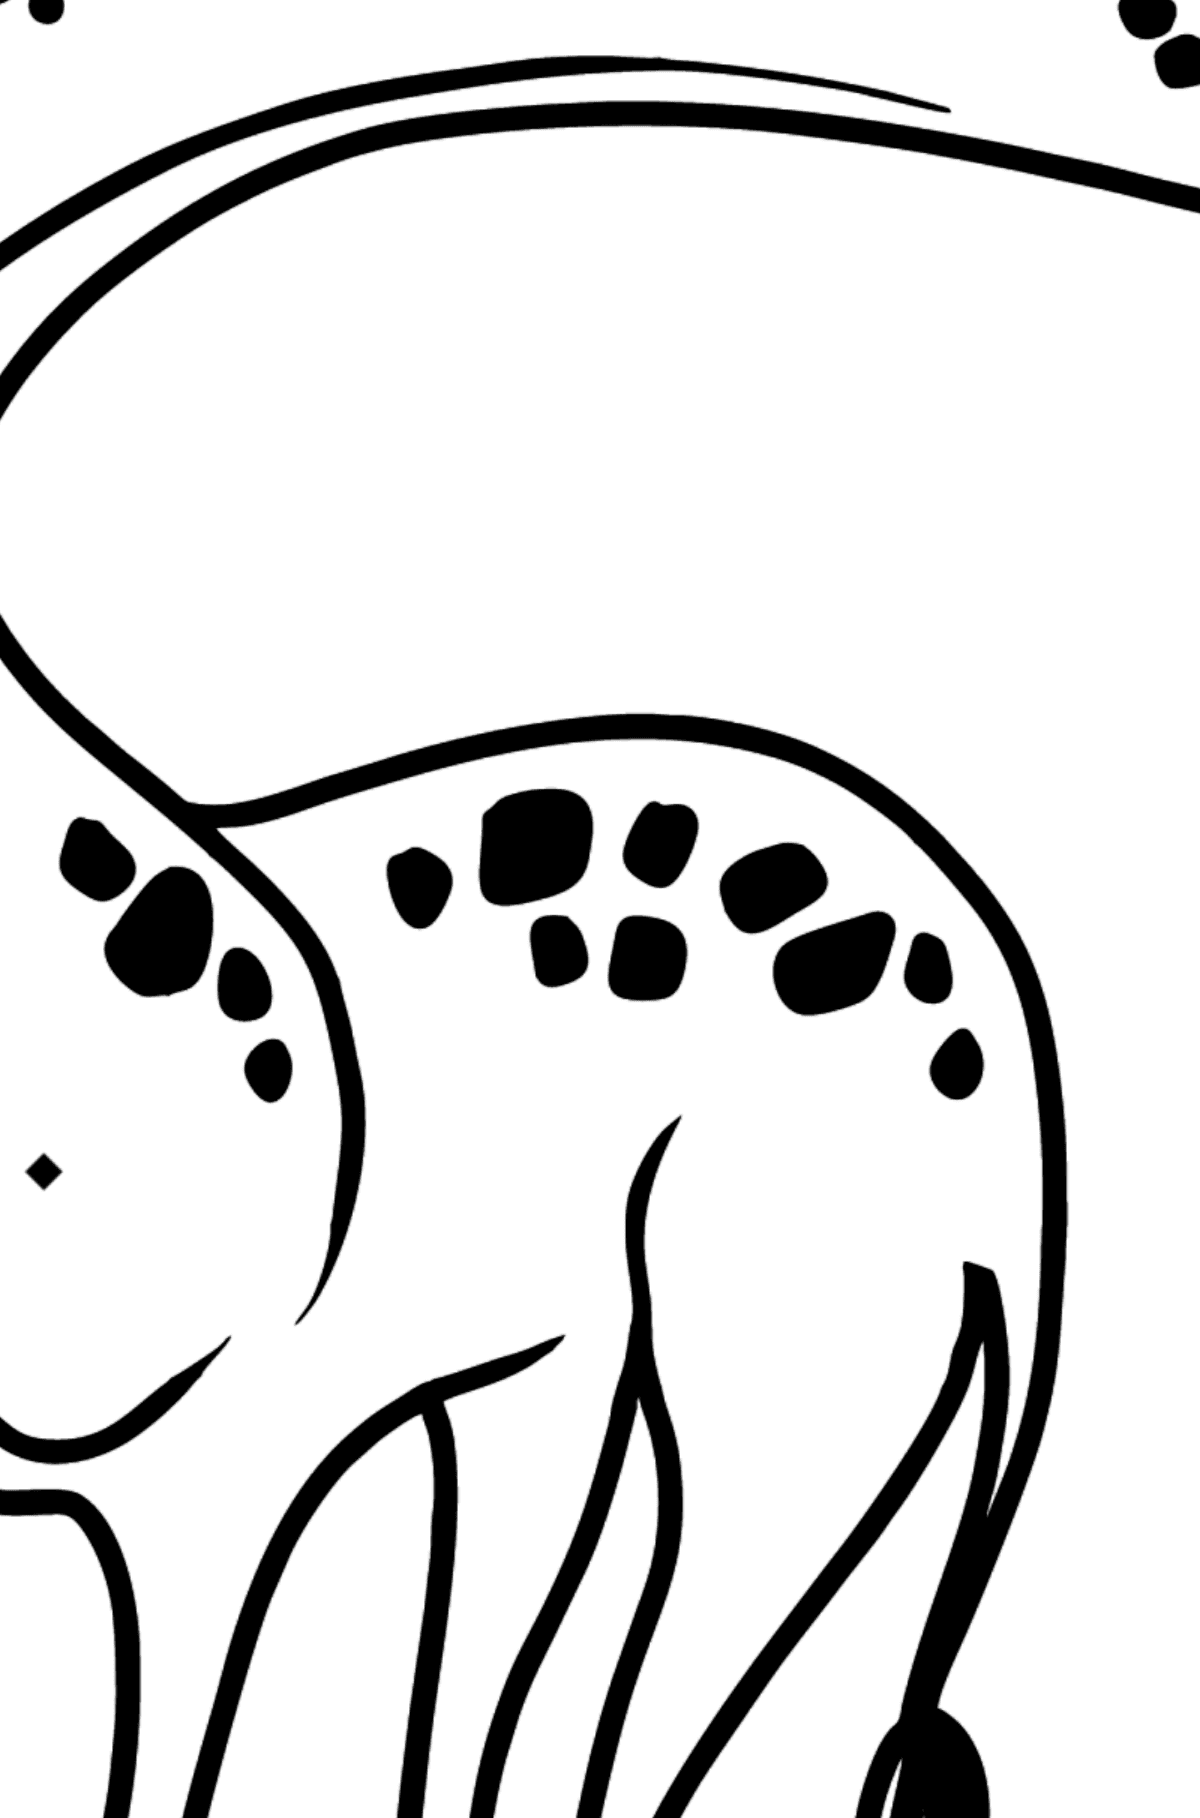 Kolorowanka żyrafa dla maluchów - Kolorowanie według symboli i figur geometrycznych dla dzieci